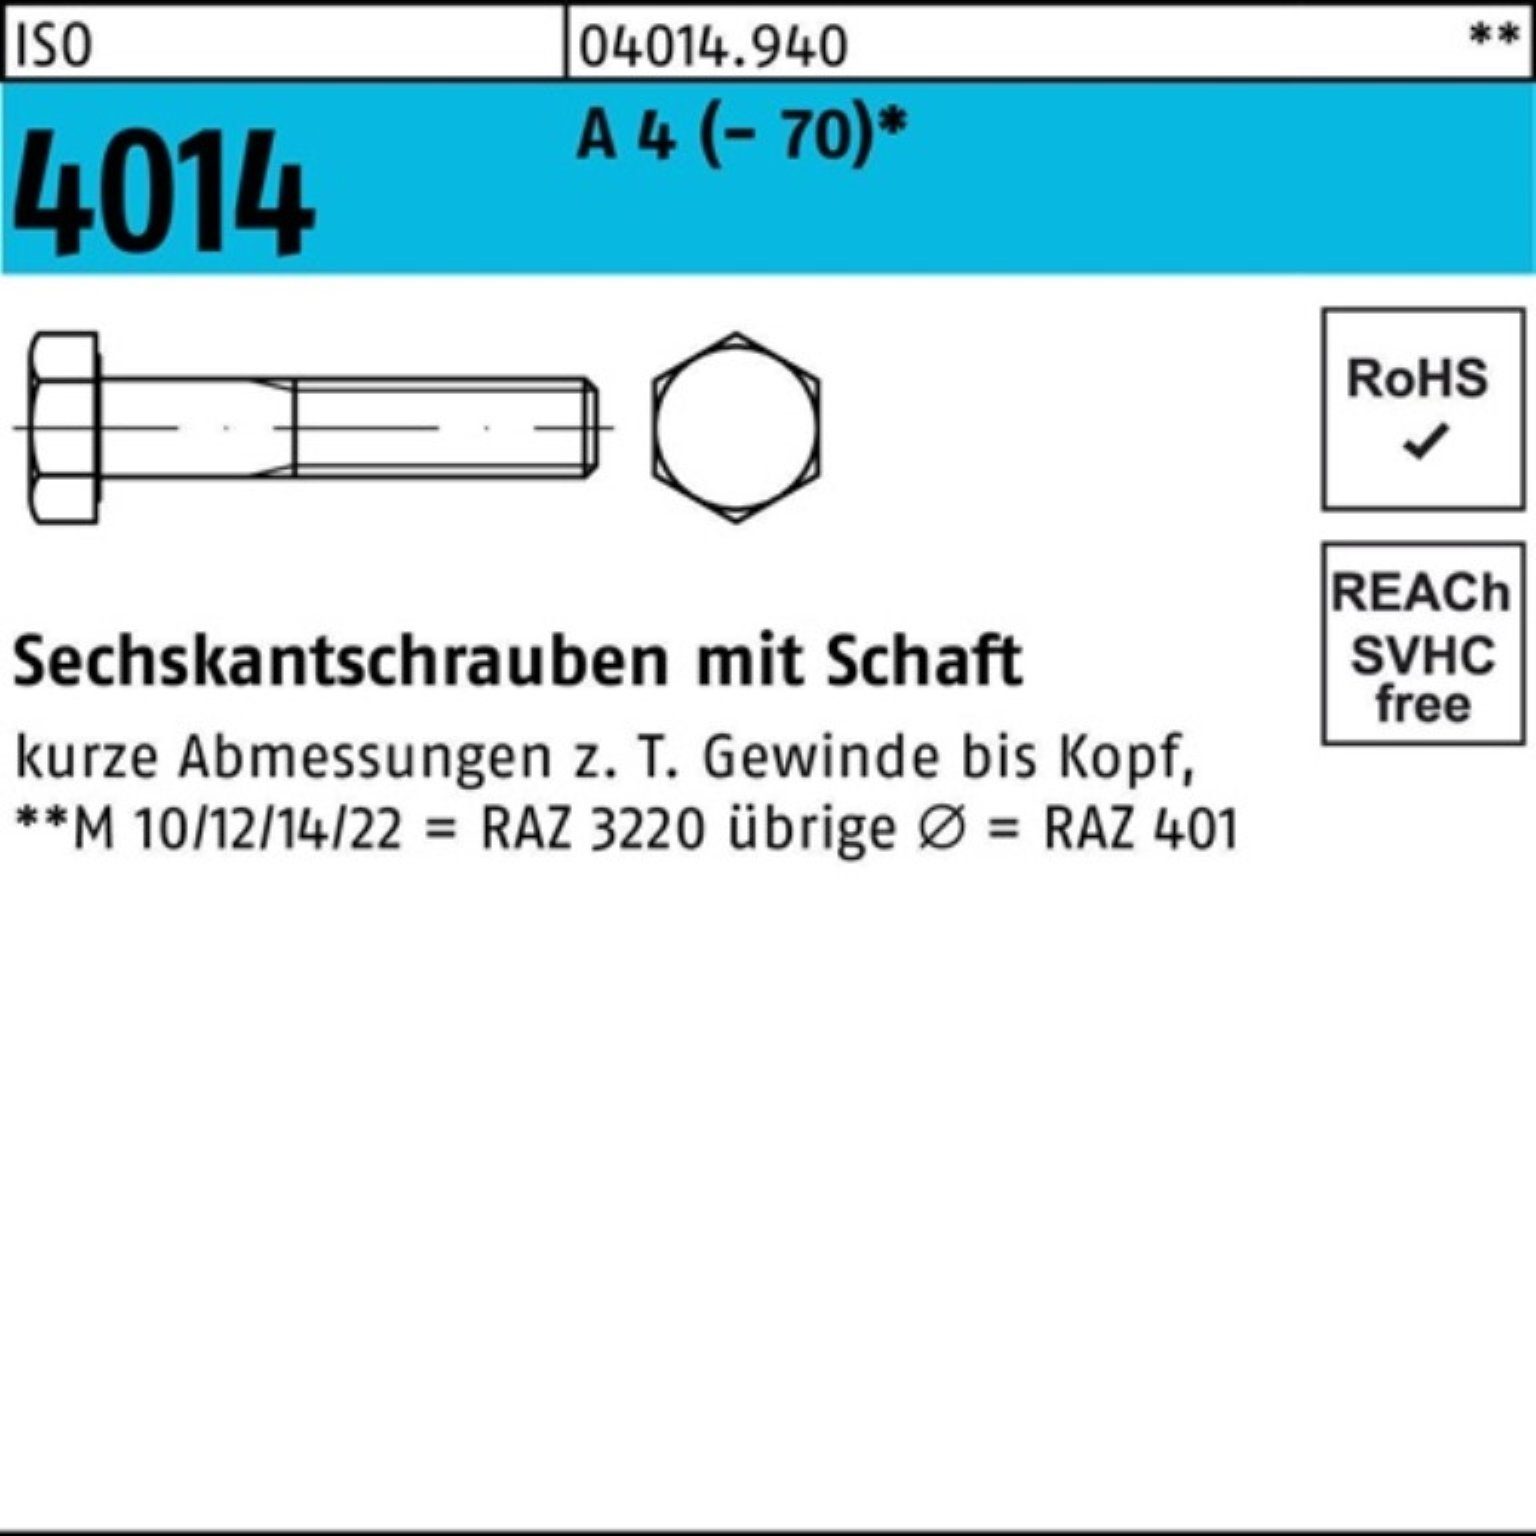 Bufab Sechskantschraube St M24x 4014 ISO Sechskantschraube 1 Schaft (70) 220 A Pack 4 100er